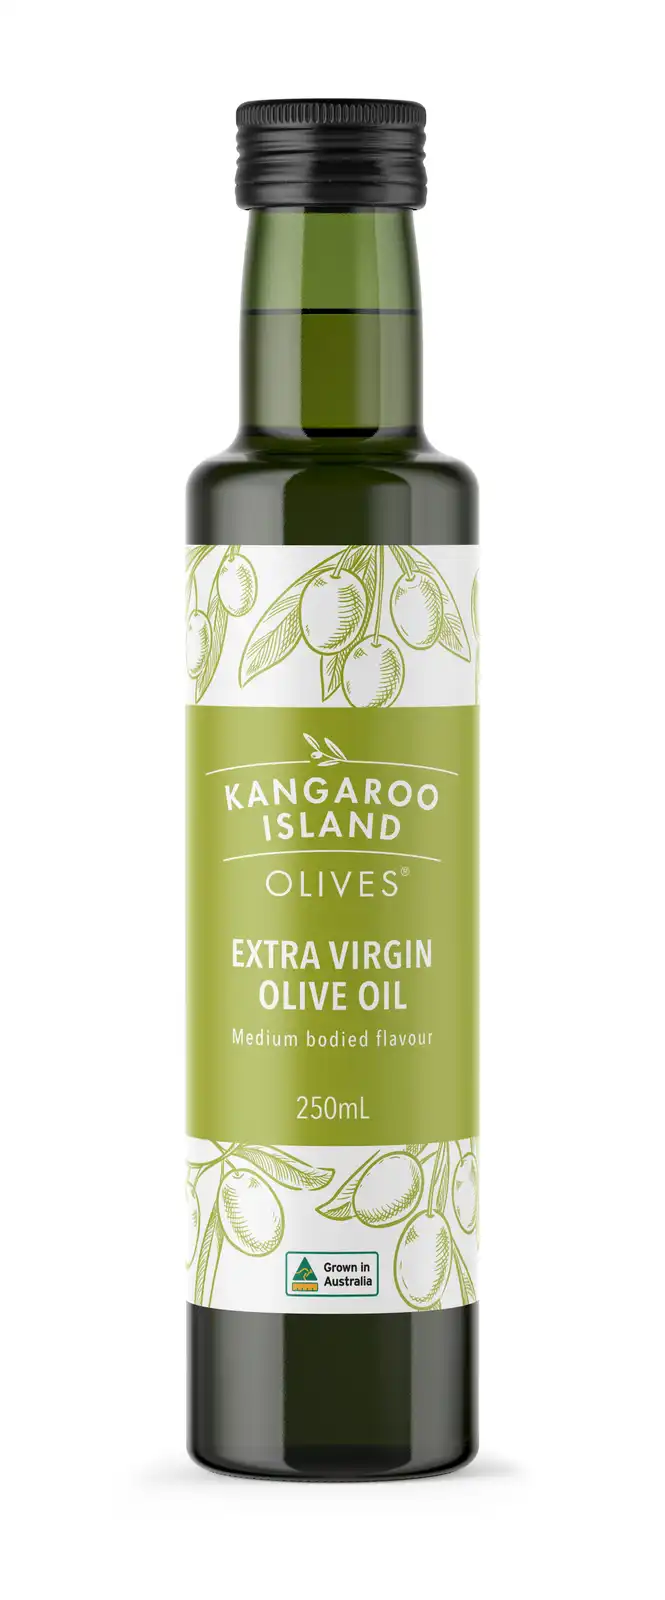 Kangaroo Island Olives - Extra Virgin Olive Oil 250ml